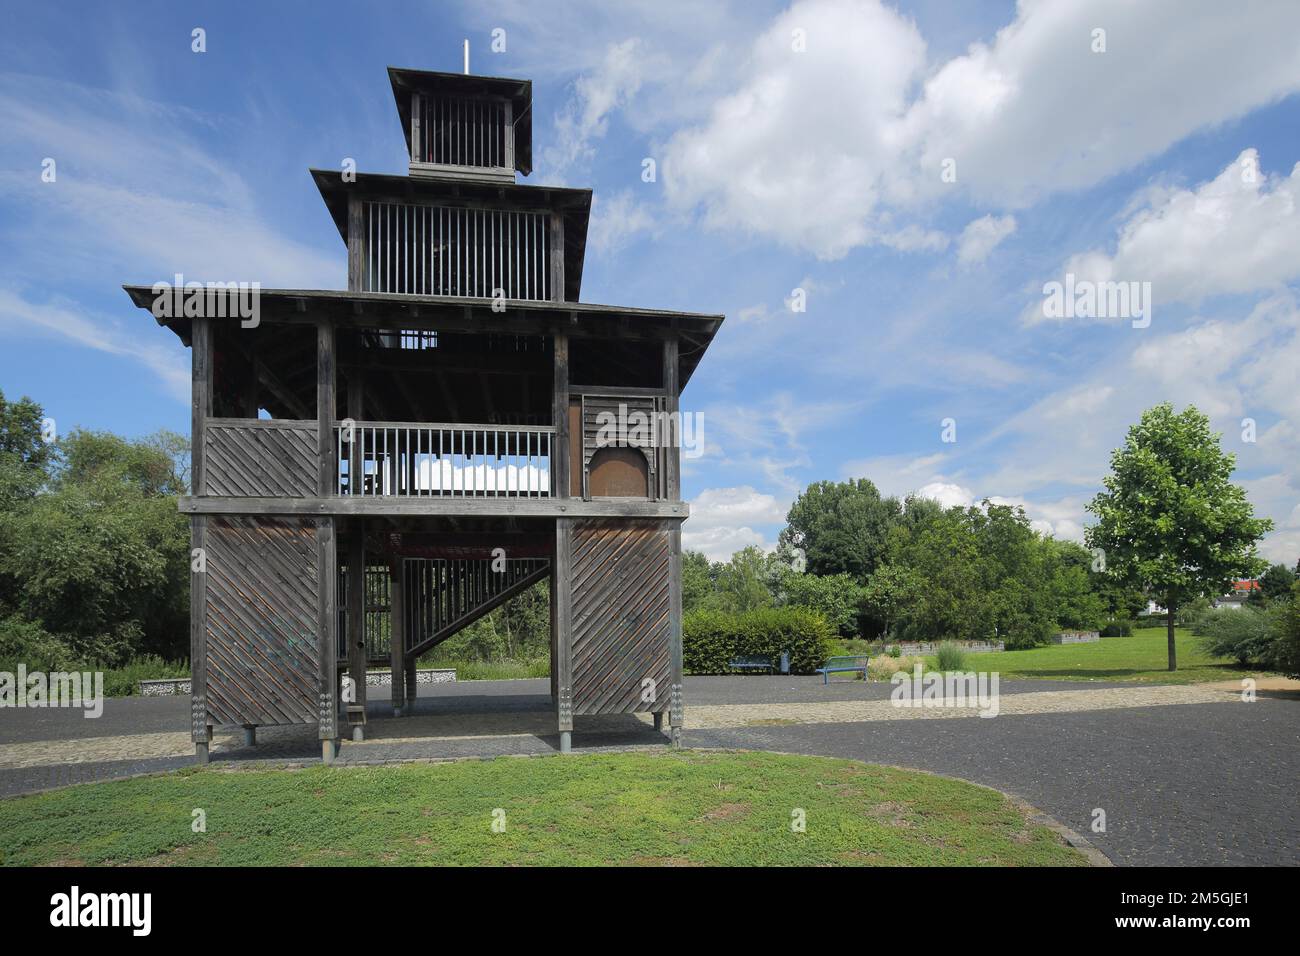 Tour porte avec construction en bois dans le parc du château, Regionalpark, Rheinmain, Gustavsburg, Hesse, Allemagne Banque D'Images